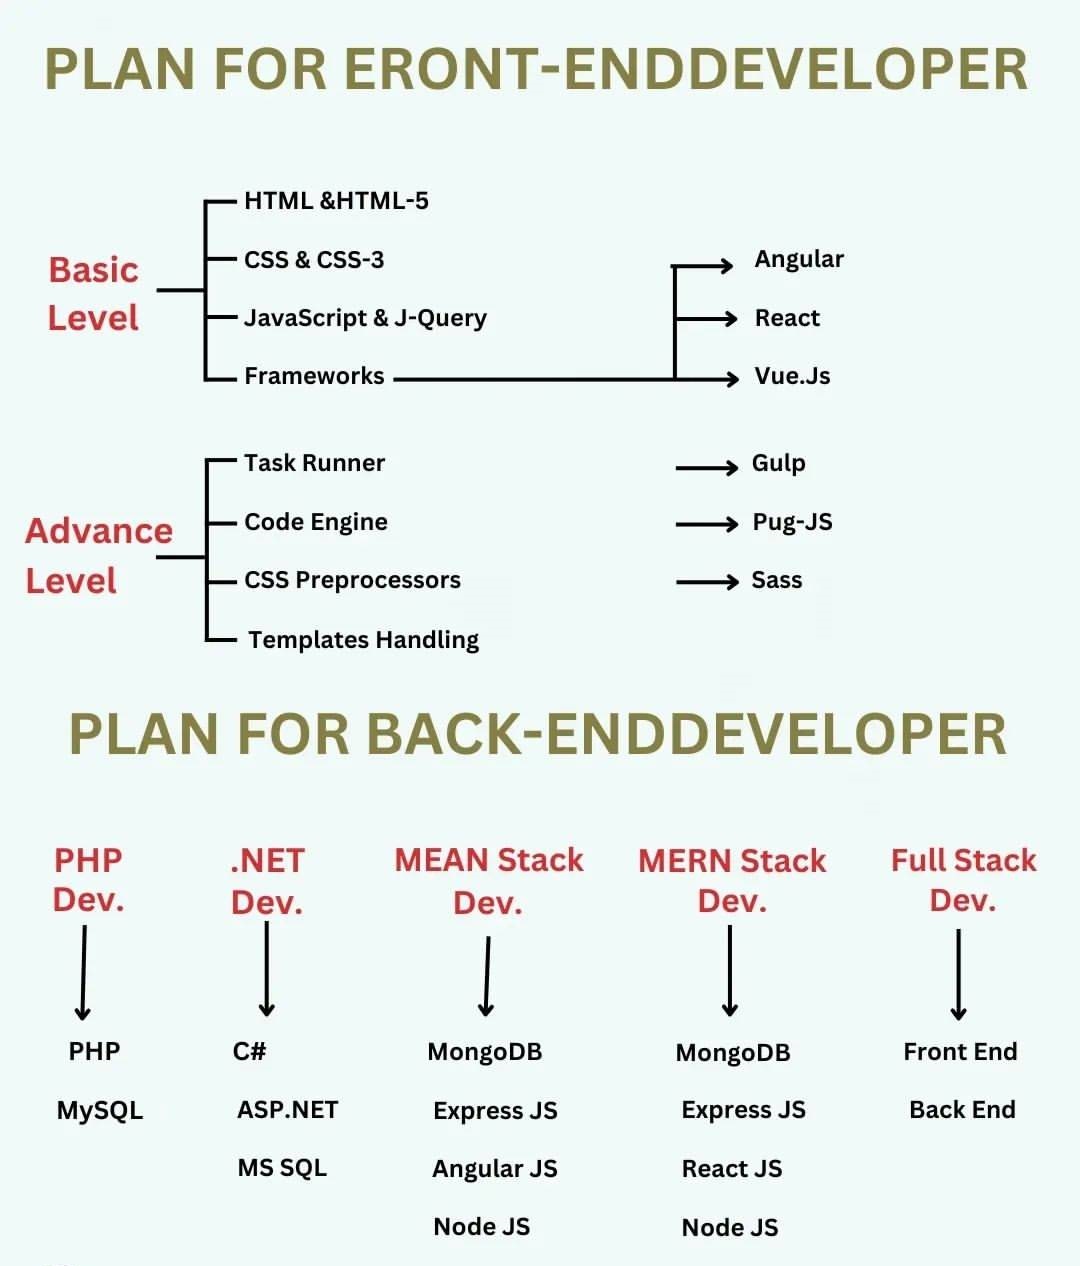 Plan for Eront-Enddeveloper & Plan for back-enddeveloper